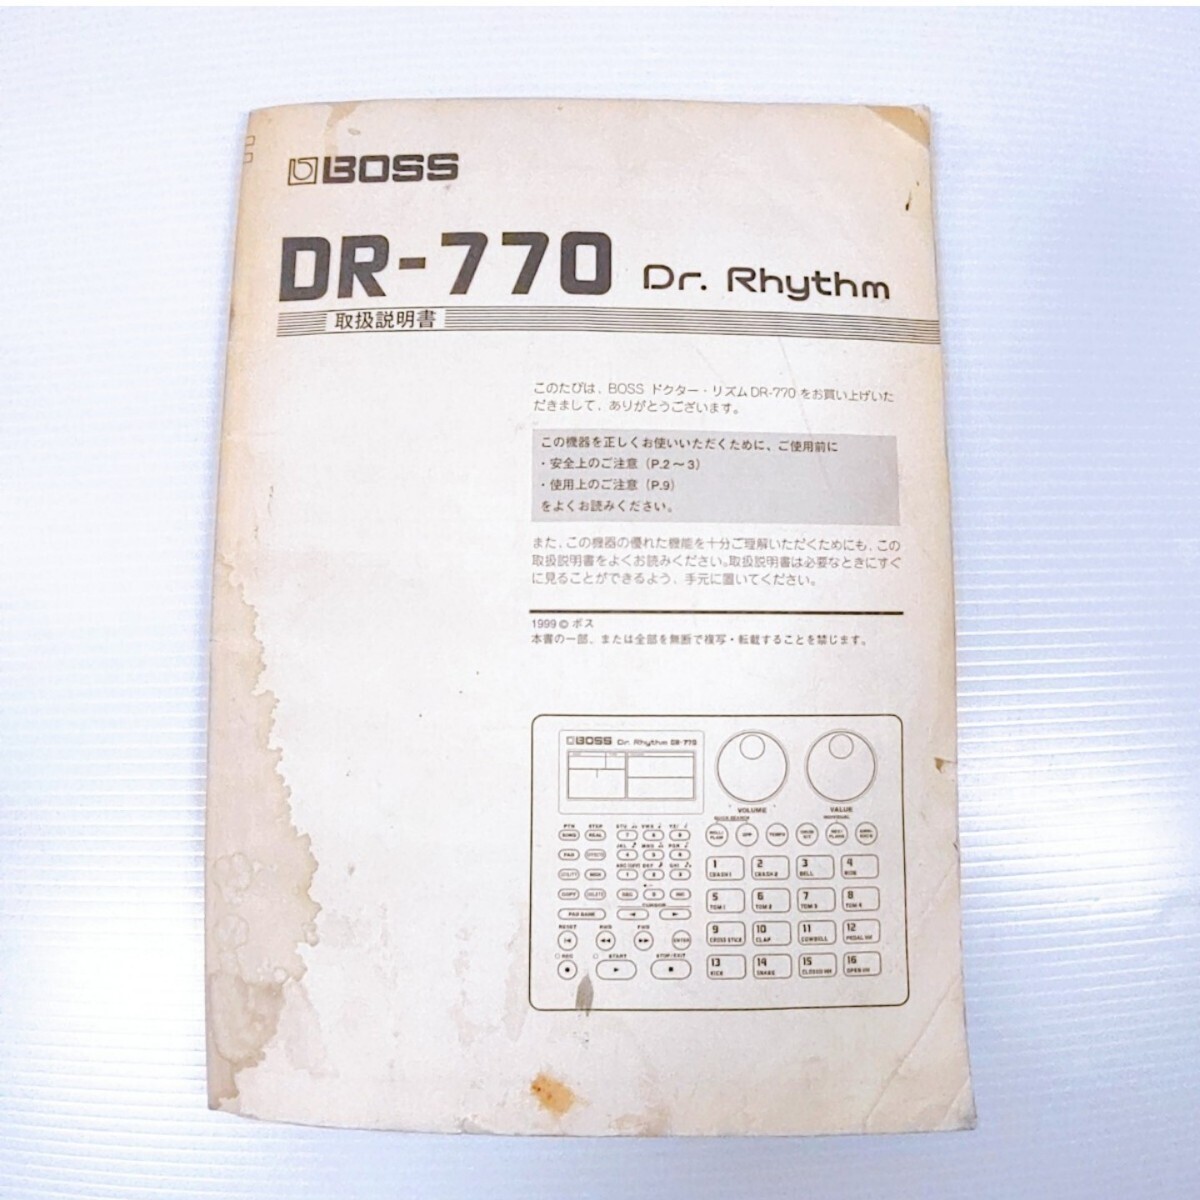 BOSS DR-770 rhythm machine Dr Rhythm Boss adaptor attaching electrification has confirmed 